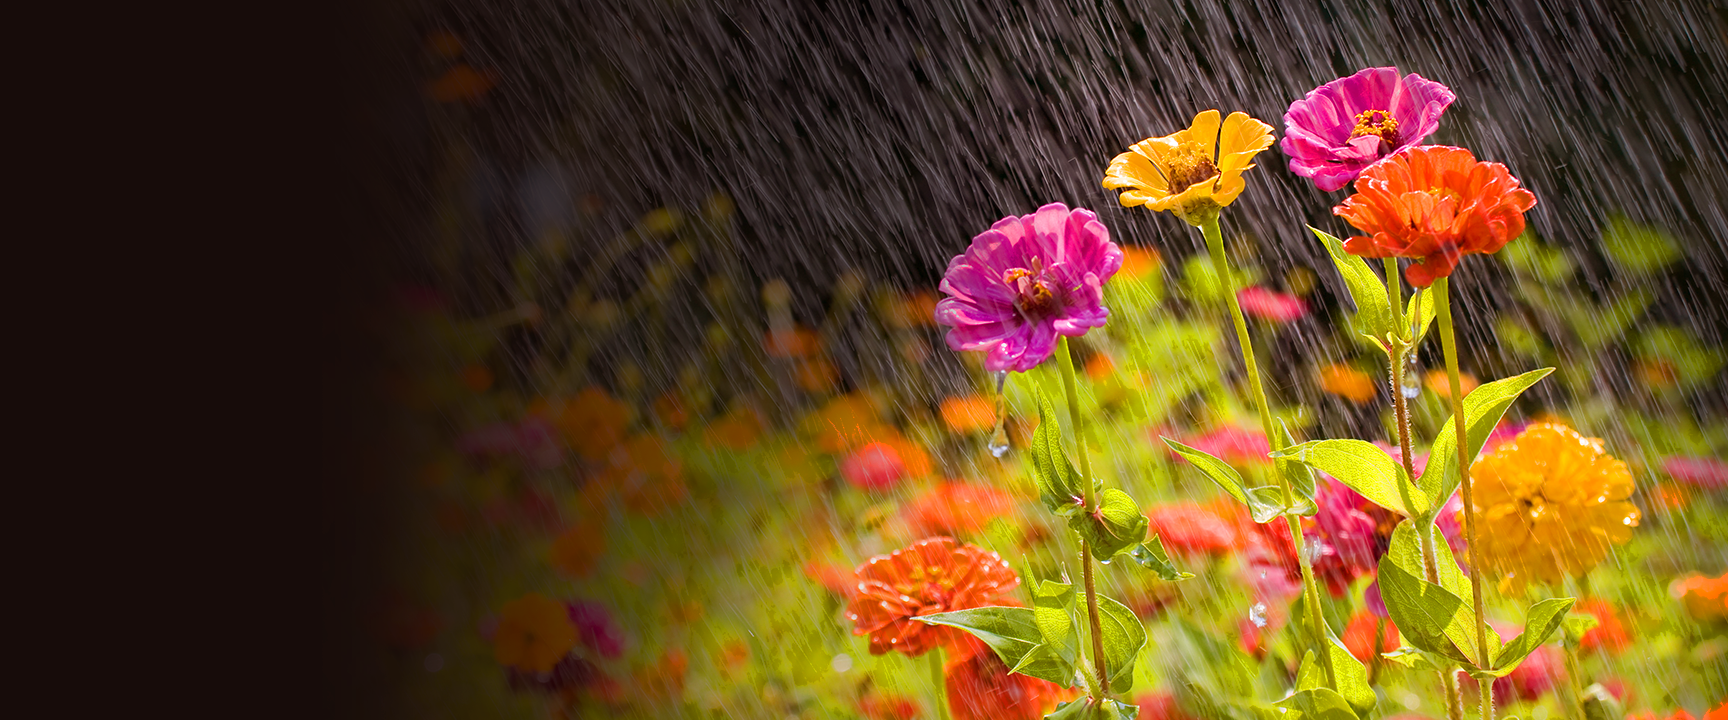 تساقط المطر على زهور الحديقة.